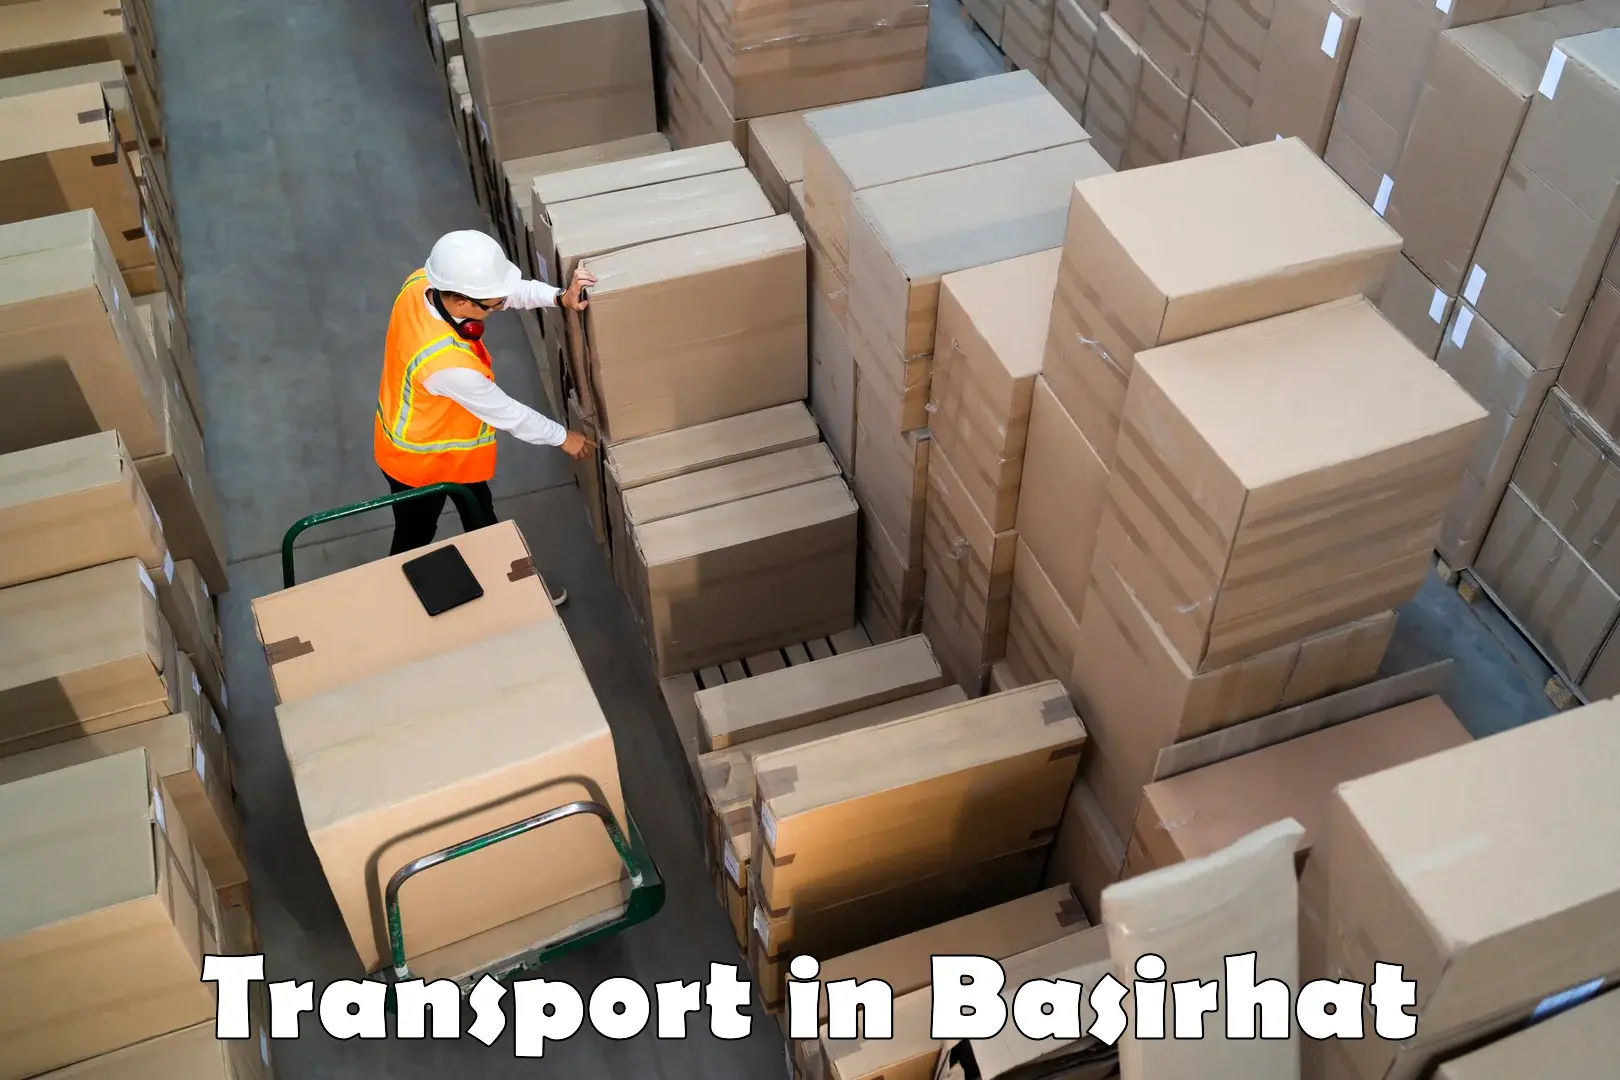 Nearest transport service in Basirhat